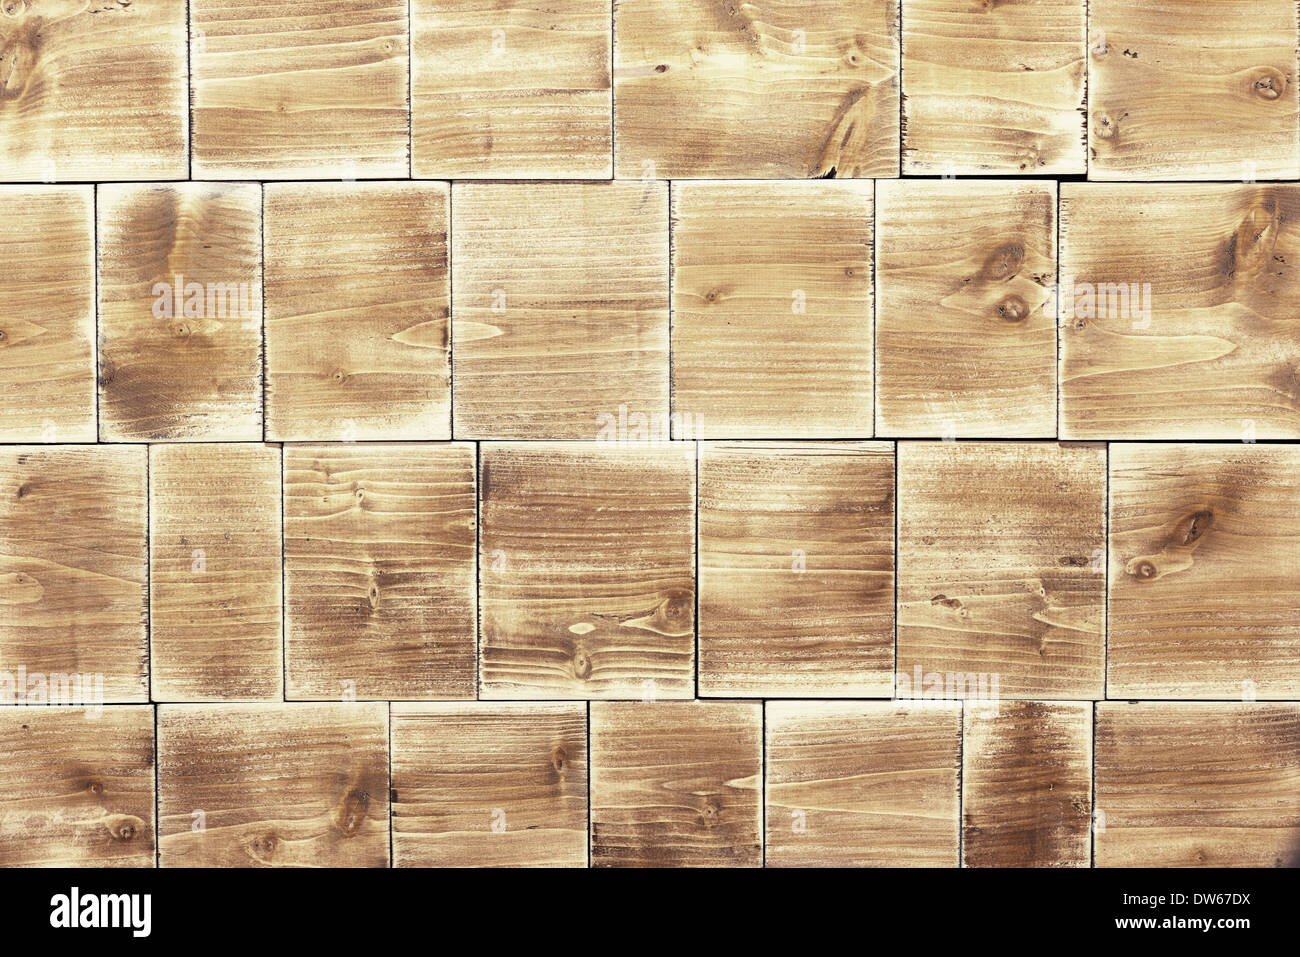 Wooden texture, wood blocks Stock Photo